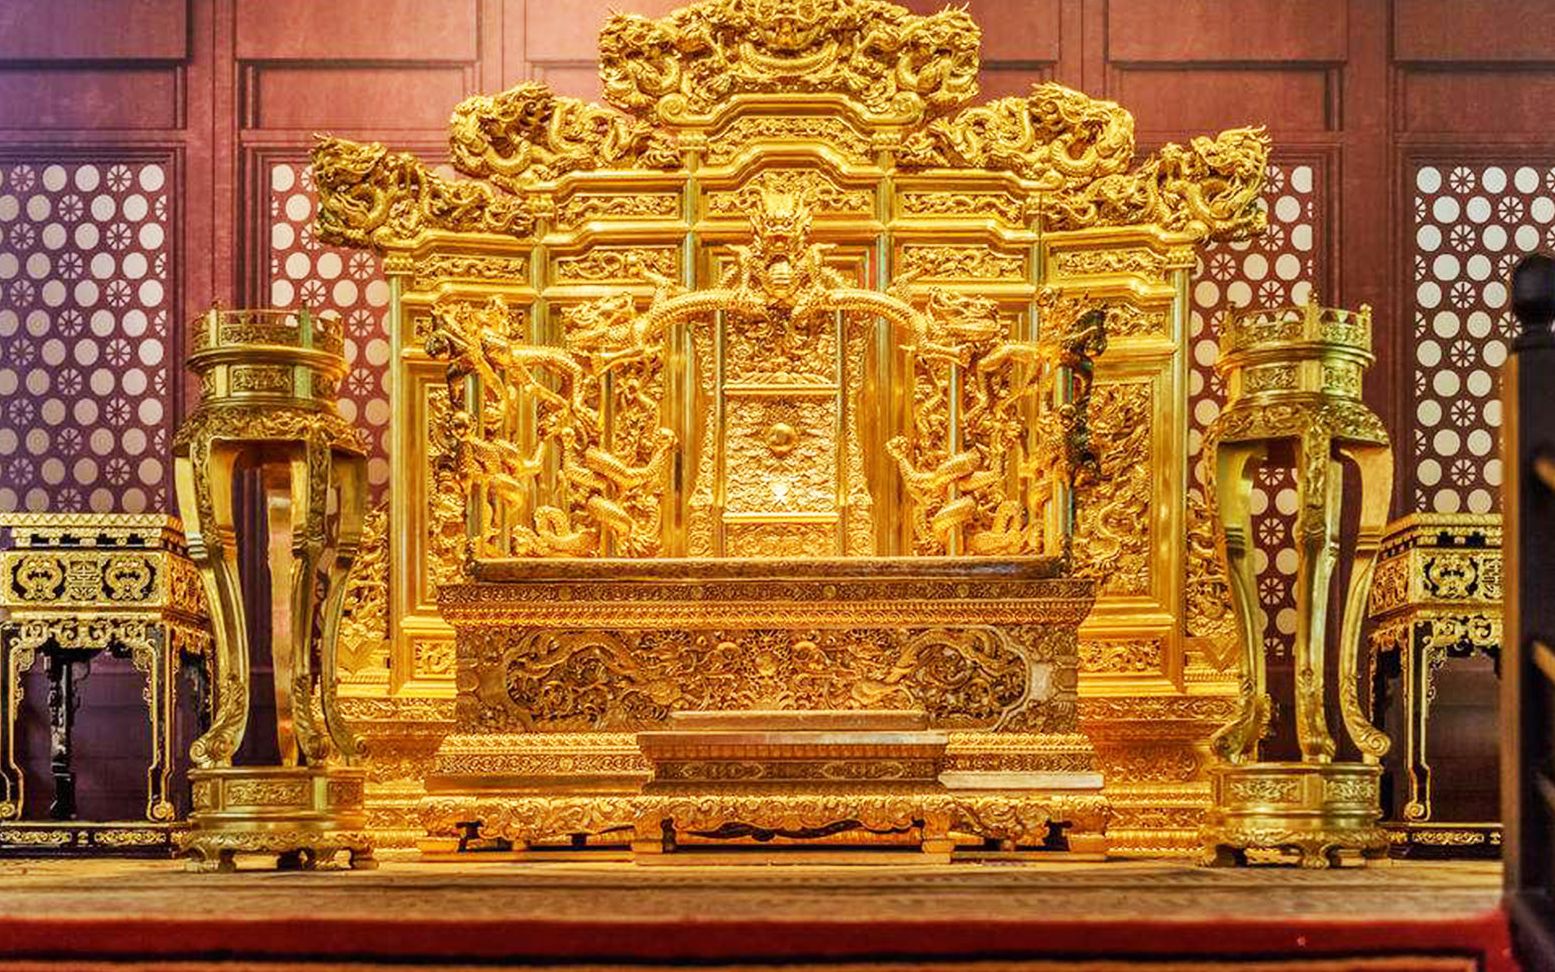 故宫里面的龙椅,到底是用啥材料做的呢?并非全是黄金